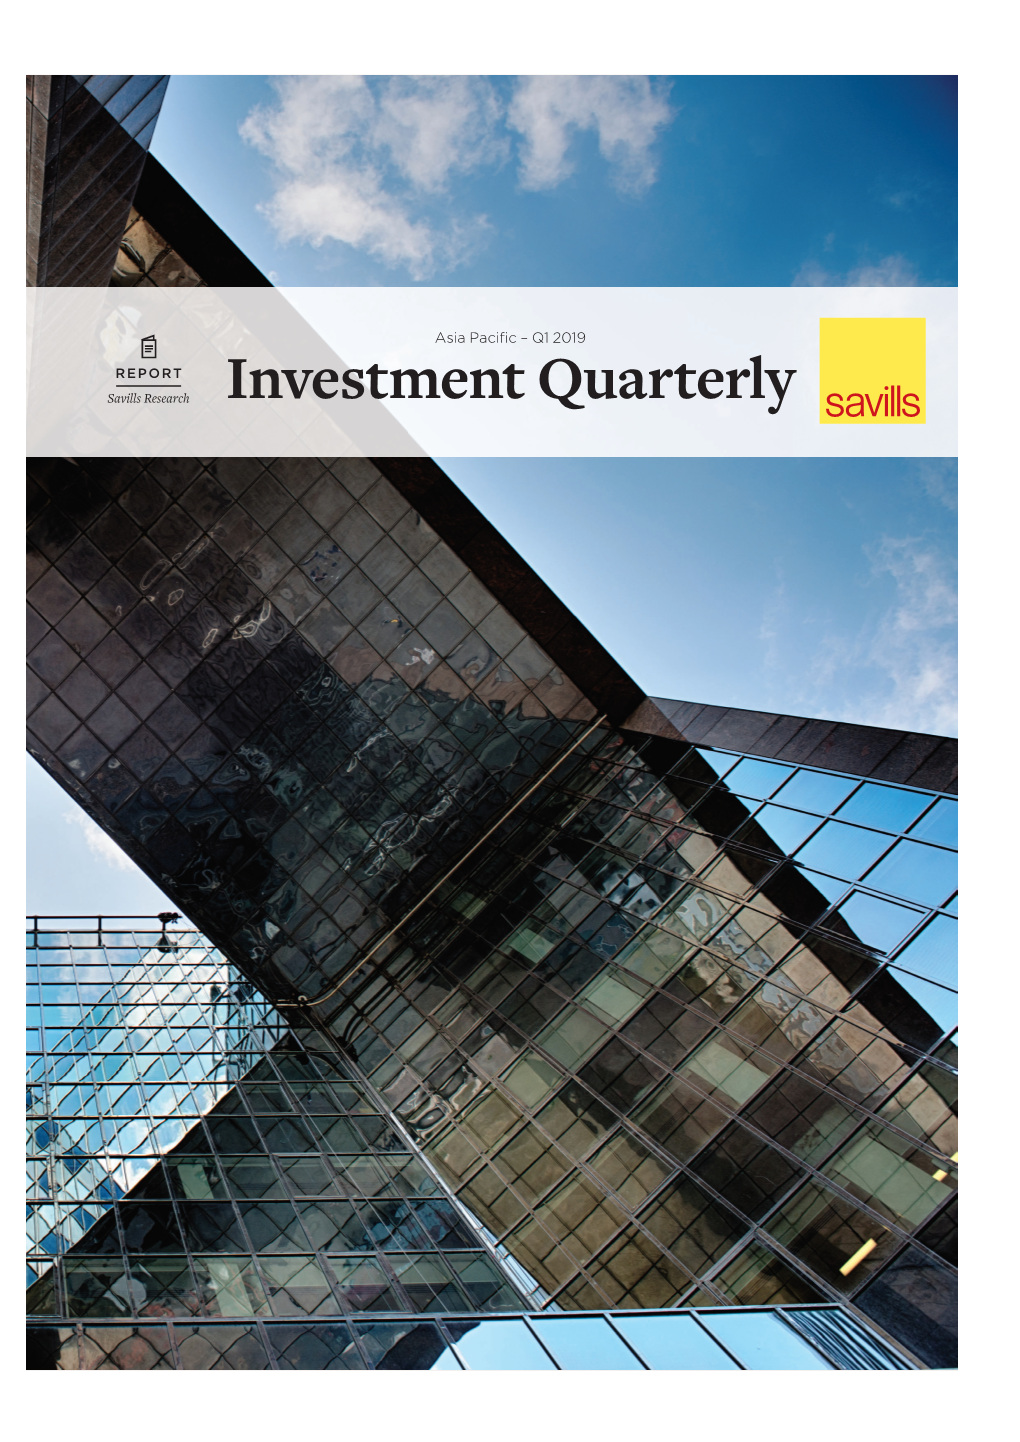 Q1 2019 Asia Pacific Investment Quarterly